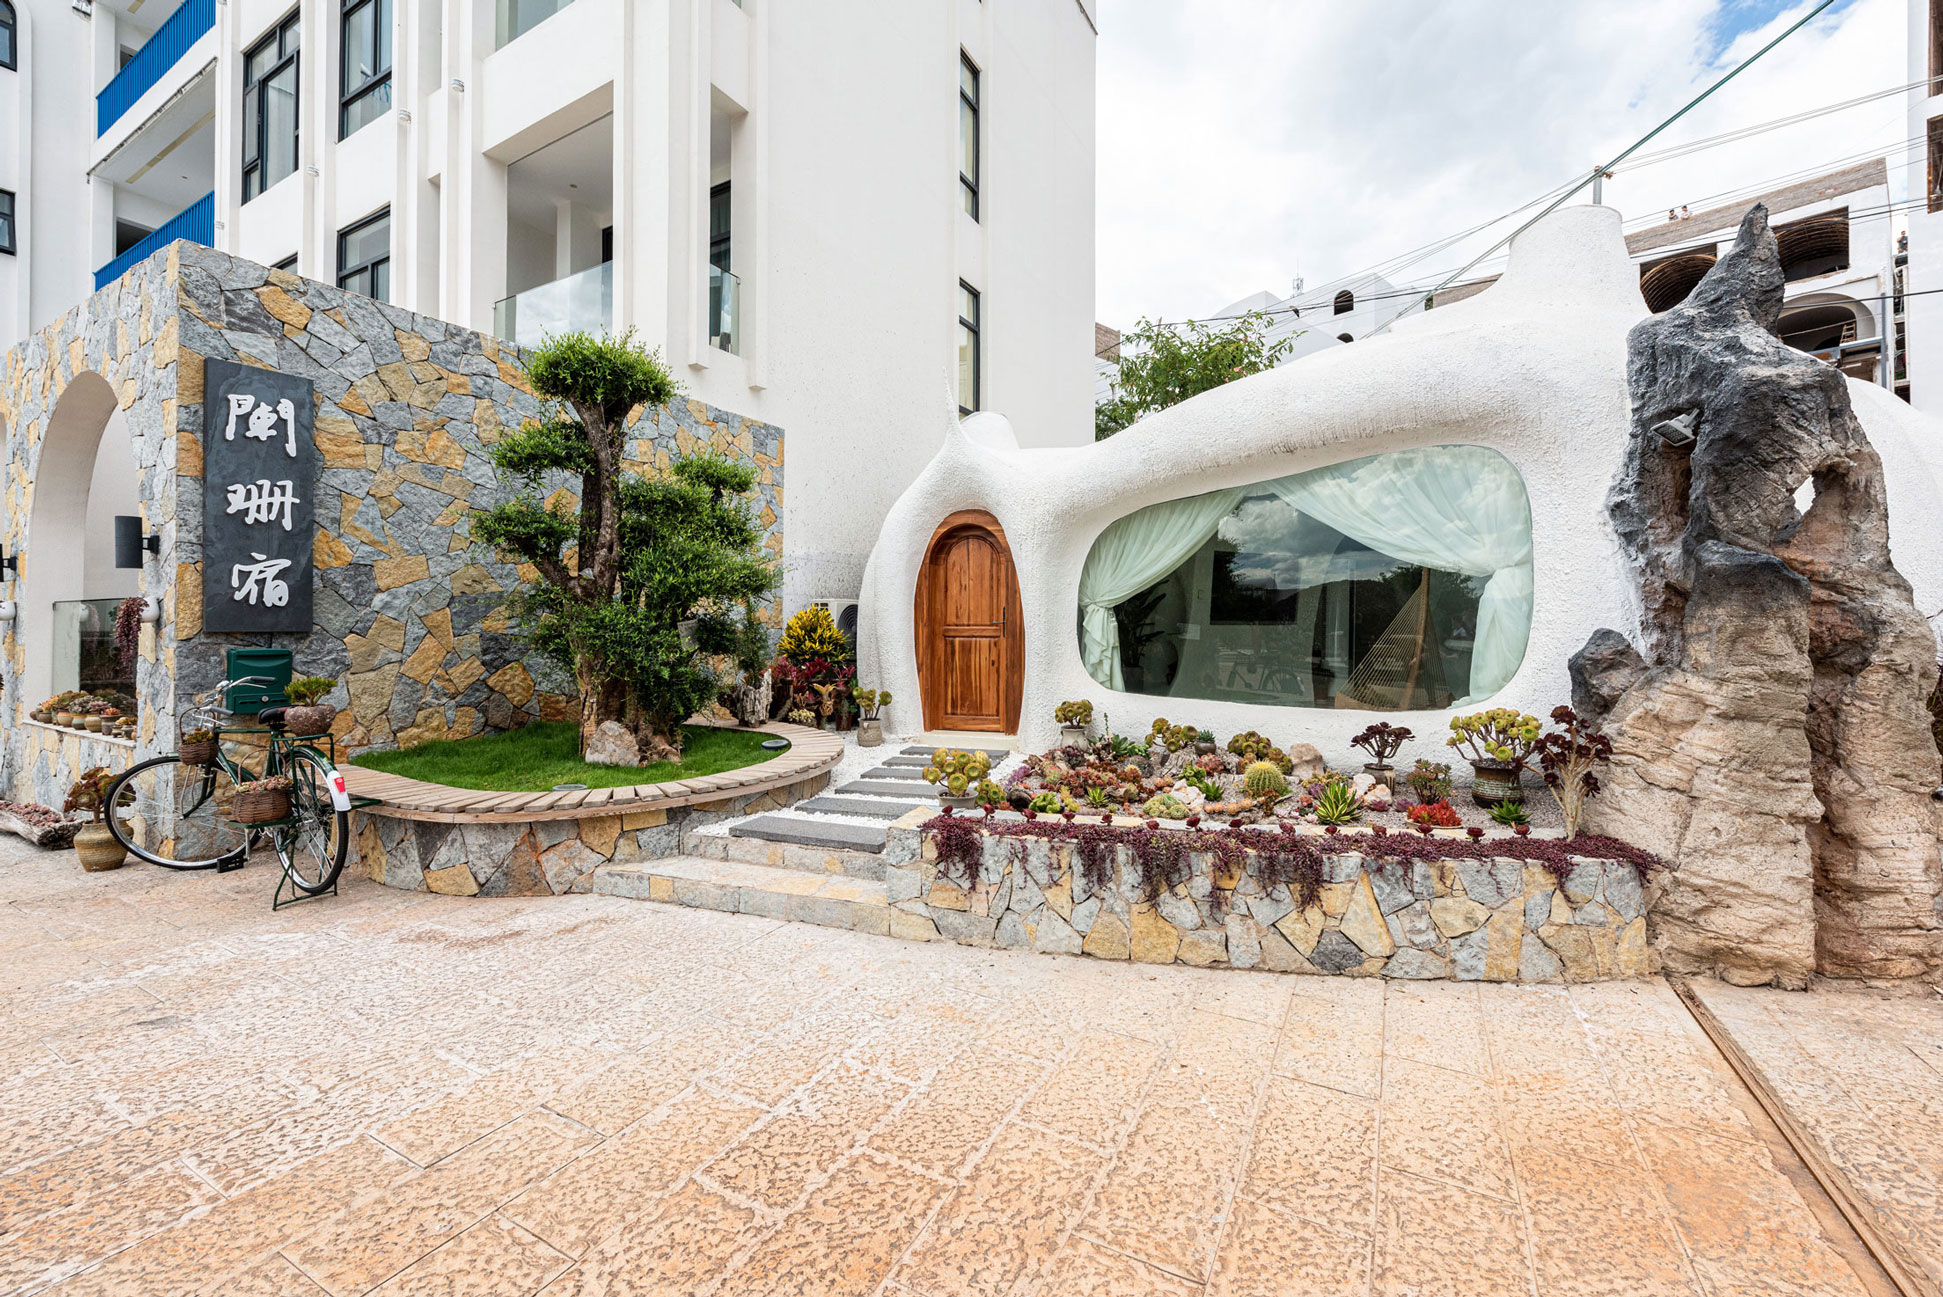 抚仙湖 · 蚁穴主题酒店空间设计丨长空创作